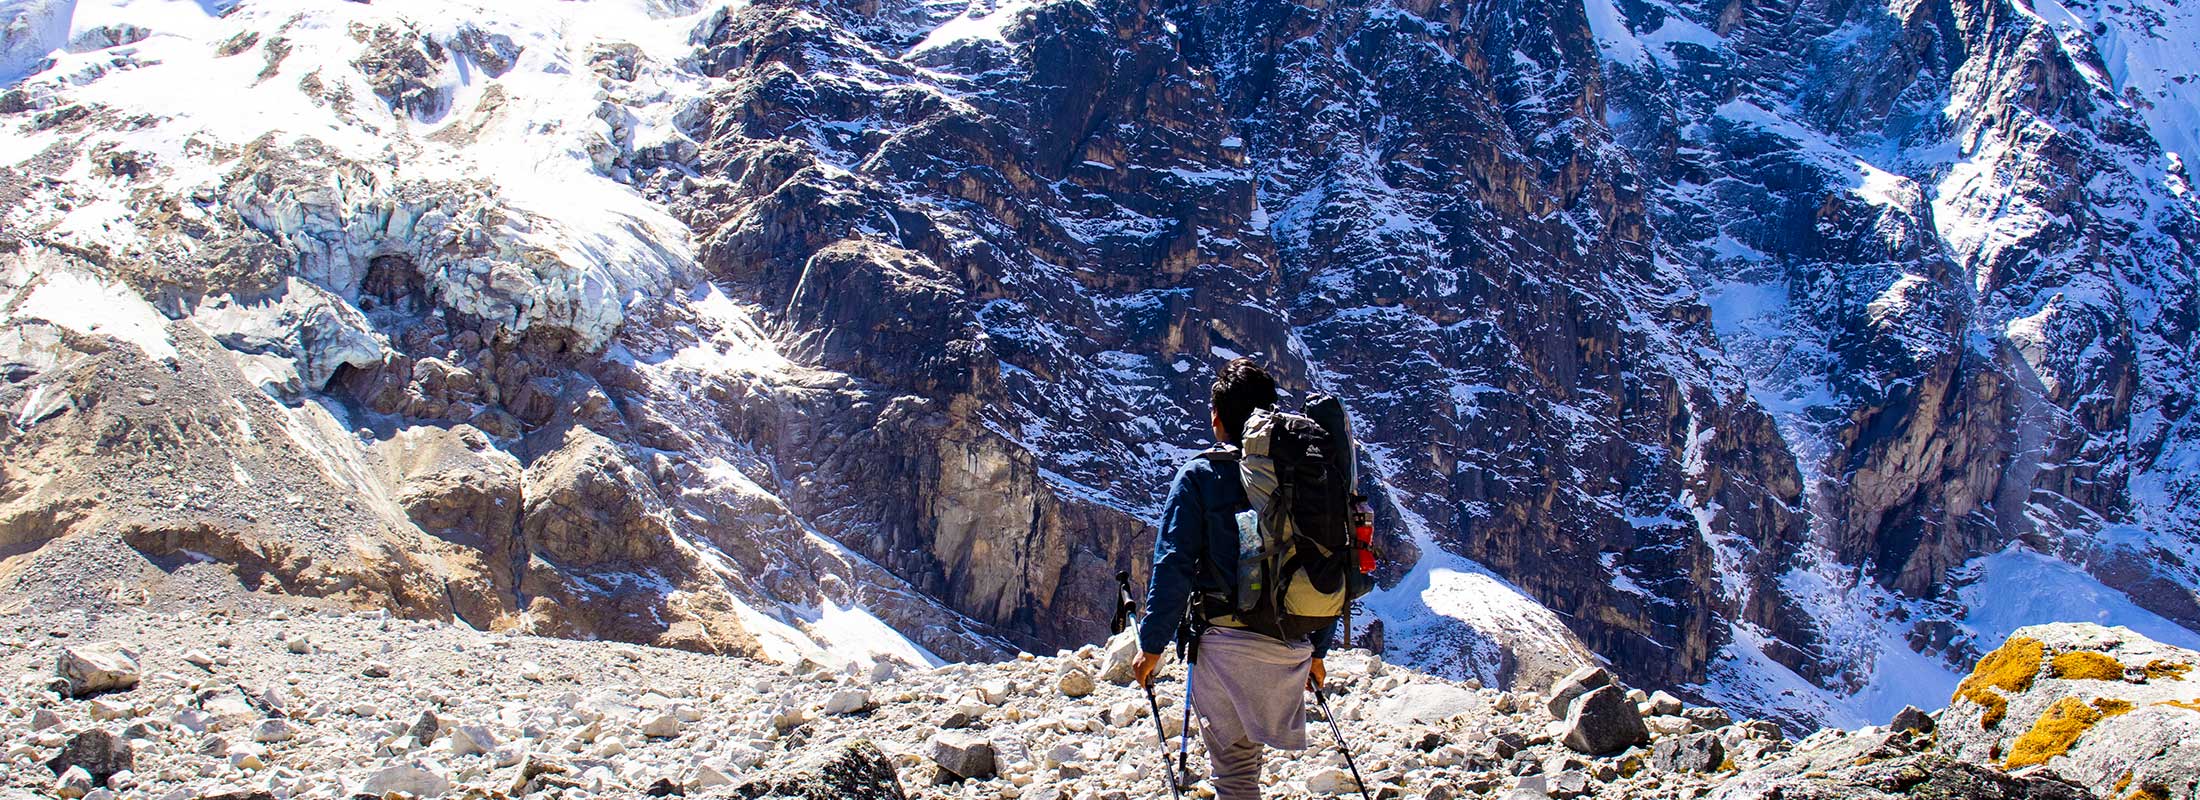 Caminatas Salkantay: Una Aventura Única hacia Machu Picchu